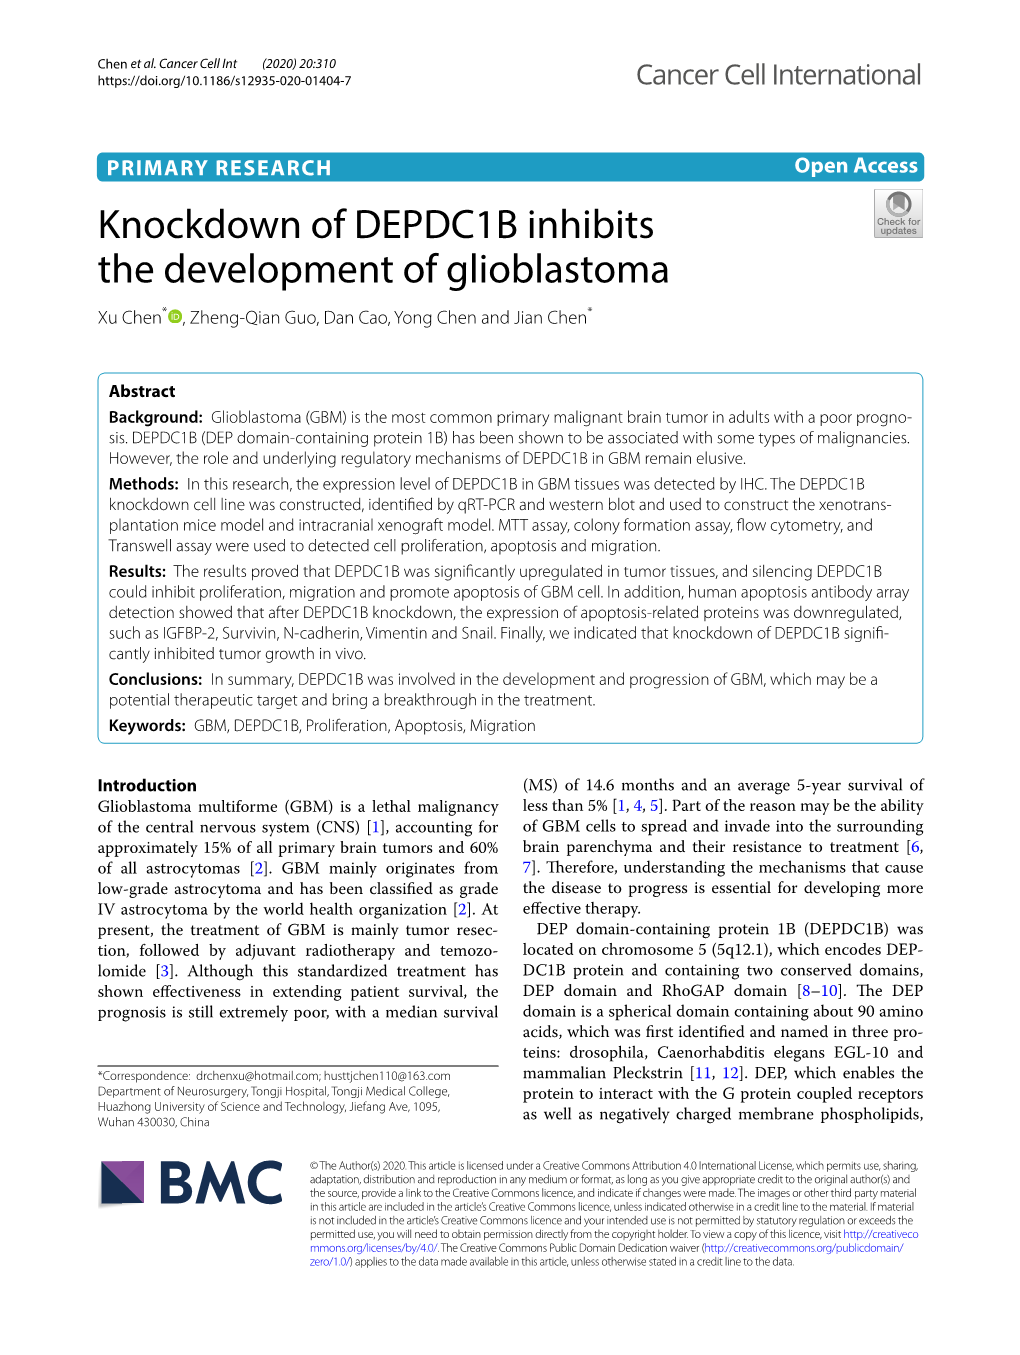 Knockdown of DEPDC1B Inhibits the Development of Glioblastoma Xu Chen* , Zheng‑Qian Guo, Dan Cao, Yong Chen and Jian Chen*